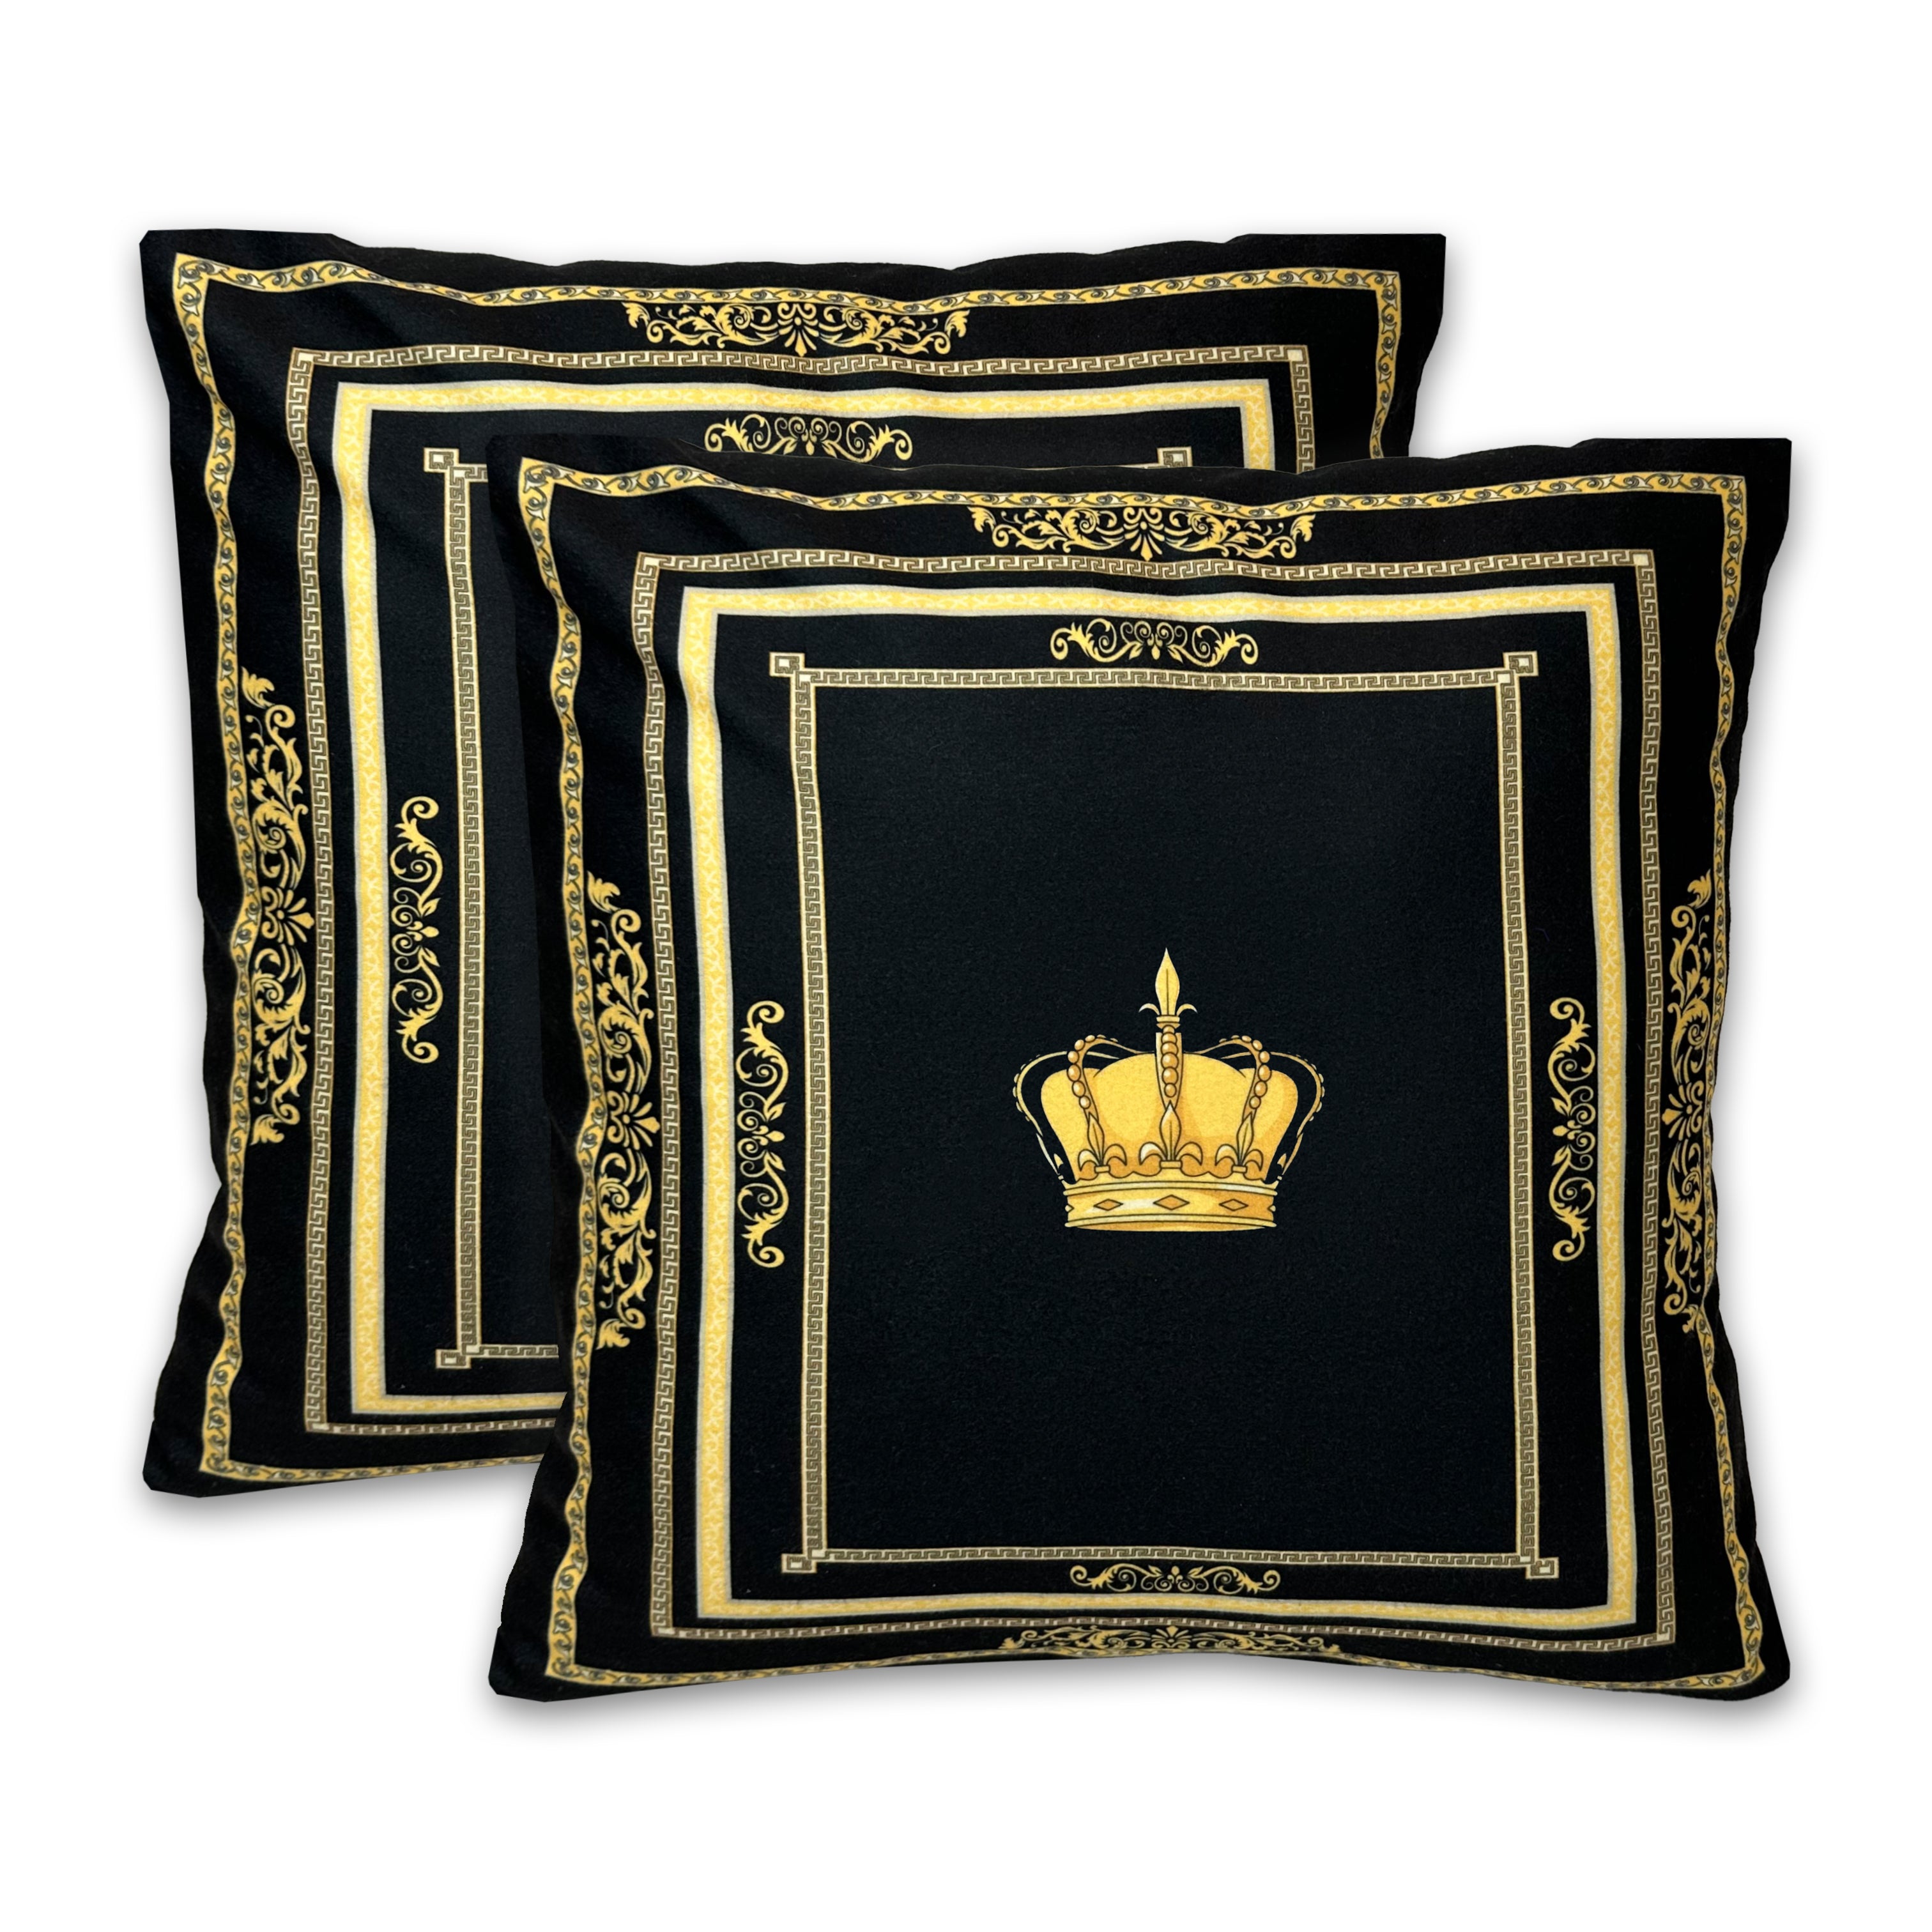 Dekorative Kissen mit Krone Motiv Seiden Look in schwarz gold mit Kissenbezug